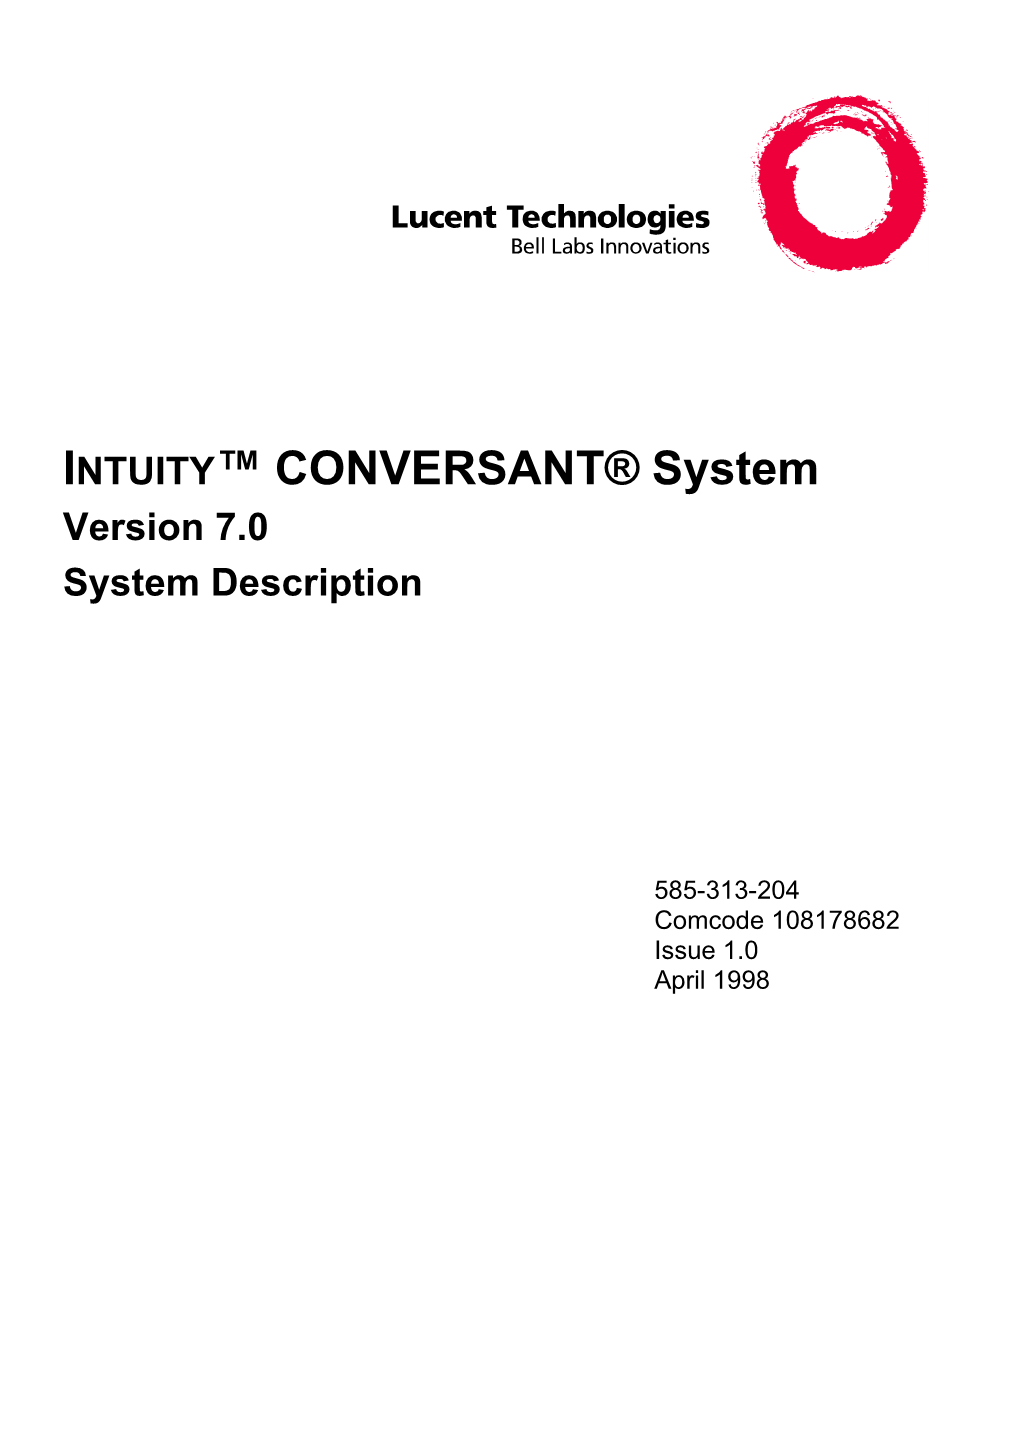 INTUITY™ CONVERSANT® System Version 7.0 System Description